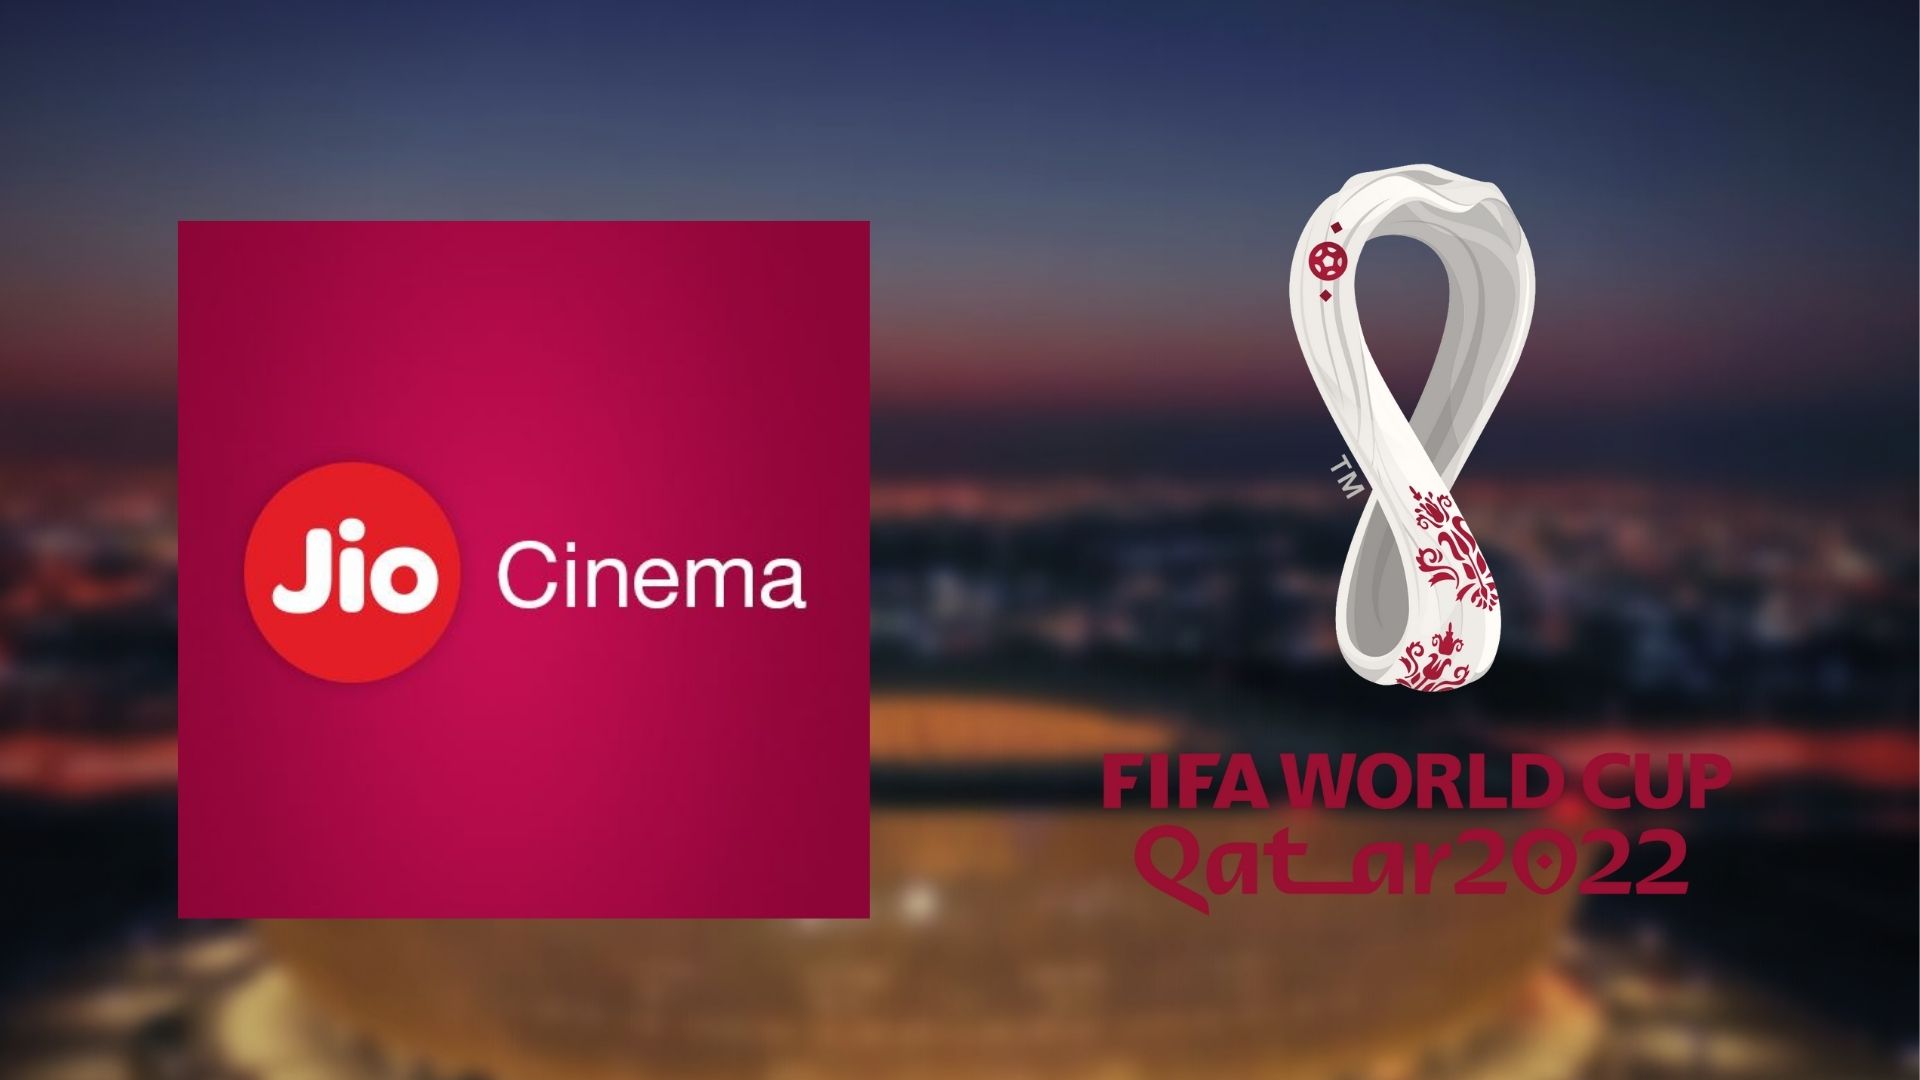 how to watch fifa world cup 2022 on jiocinema